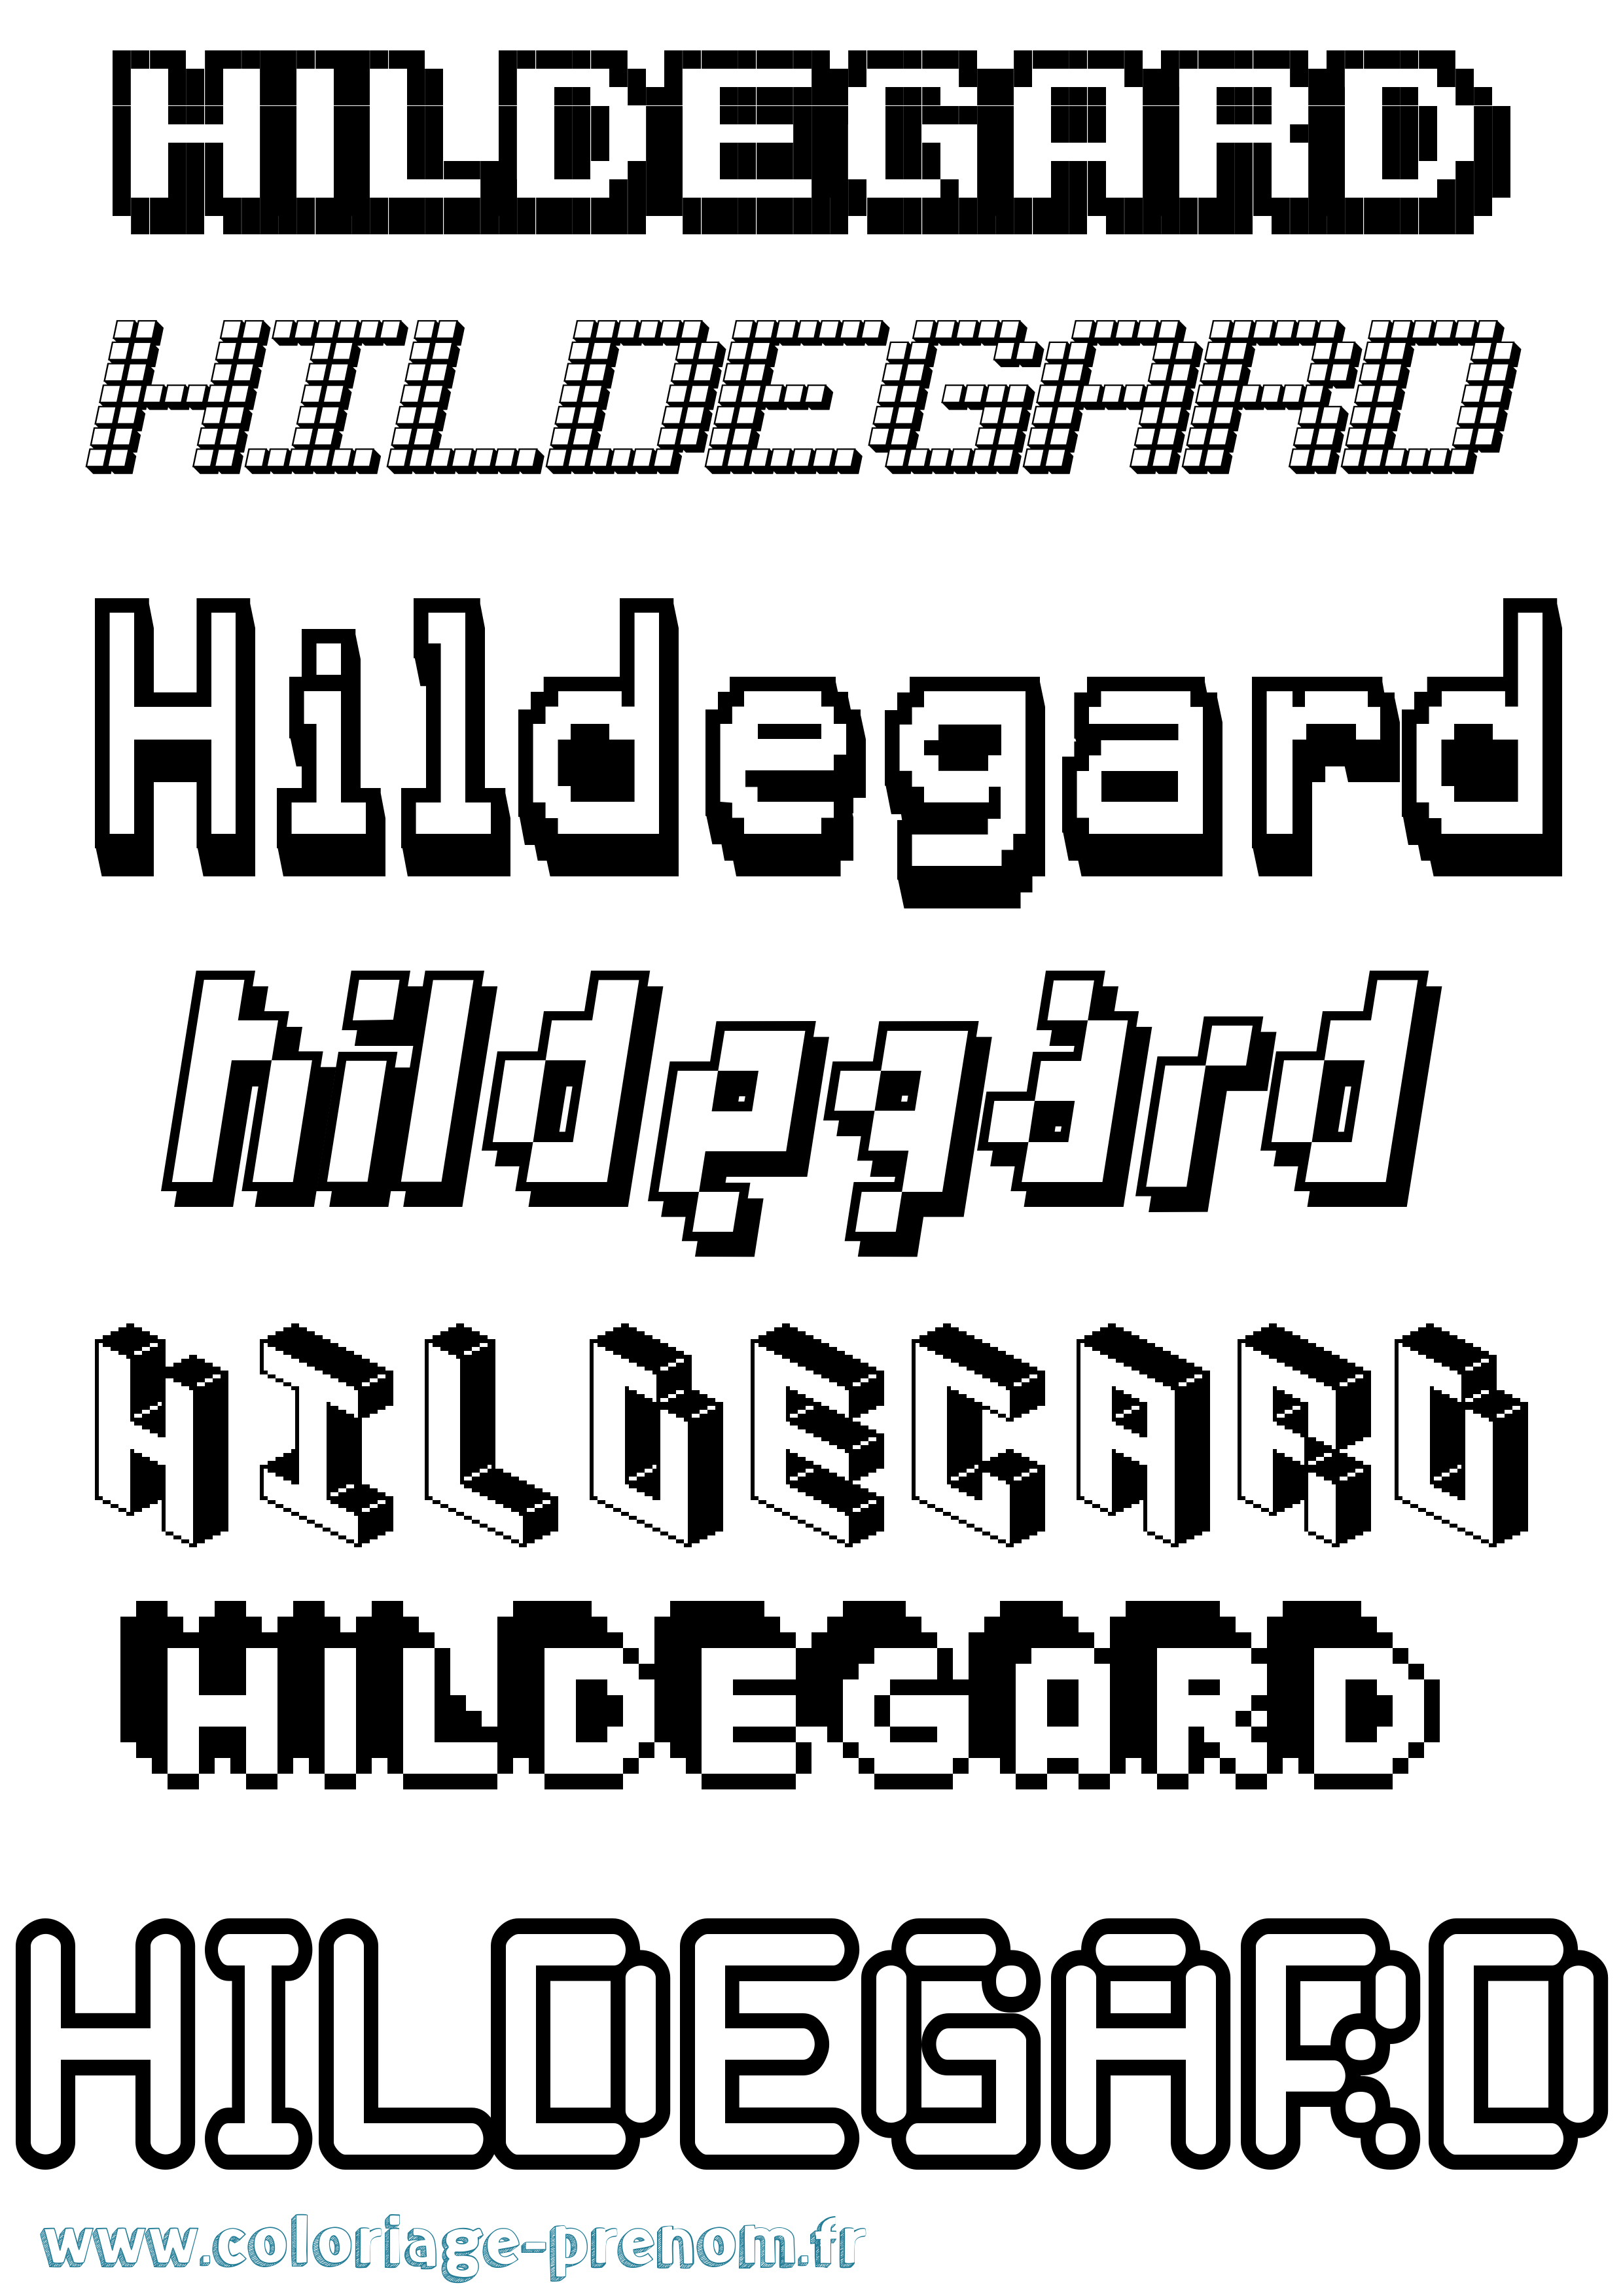 Coloriage prénom Hildegard Pixel